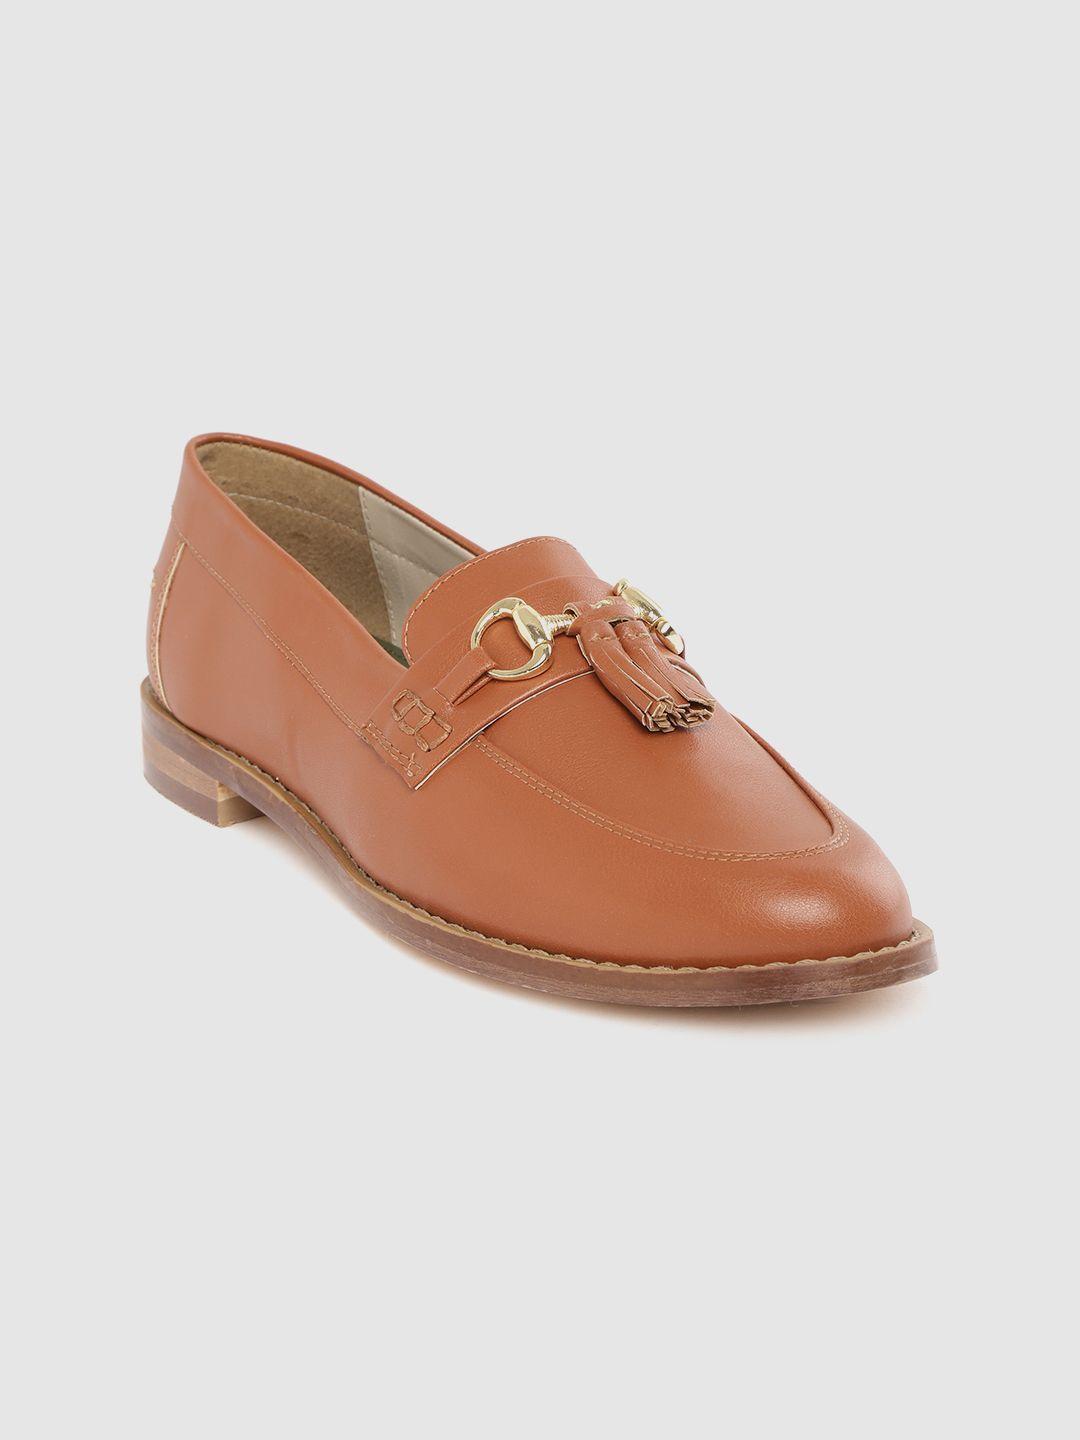 carlton london women tan brown tasselled loafers